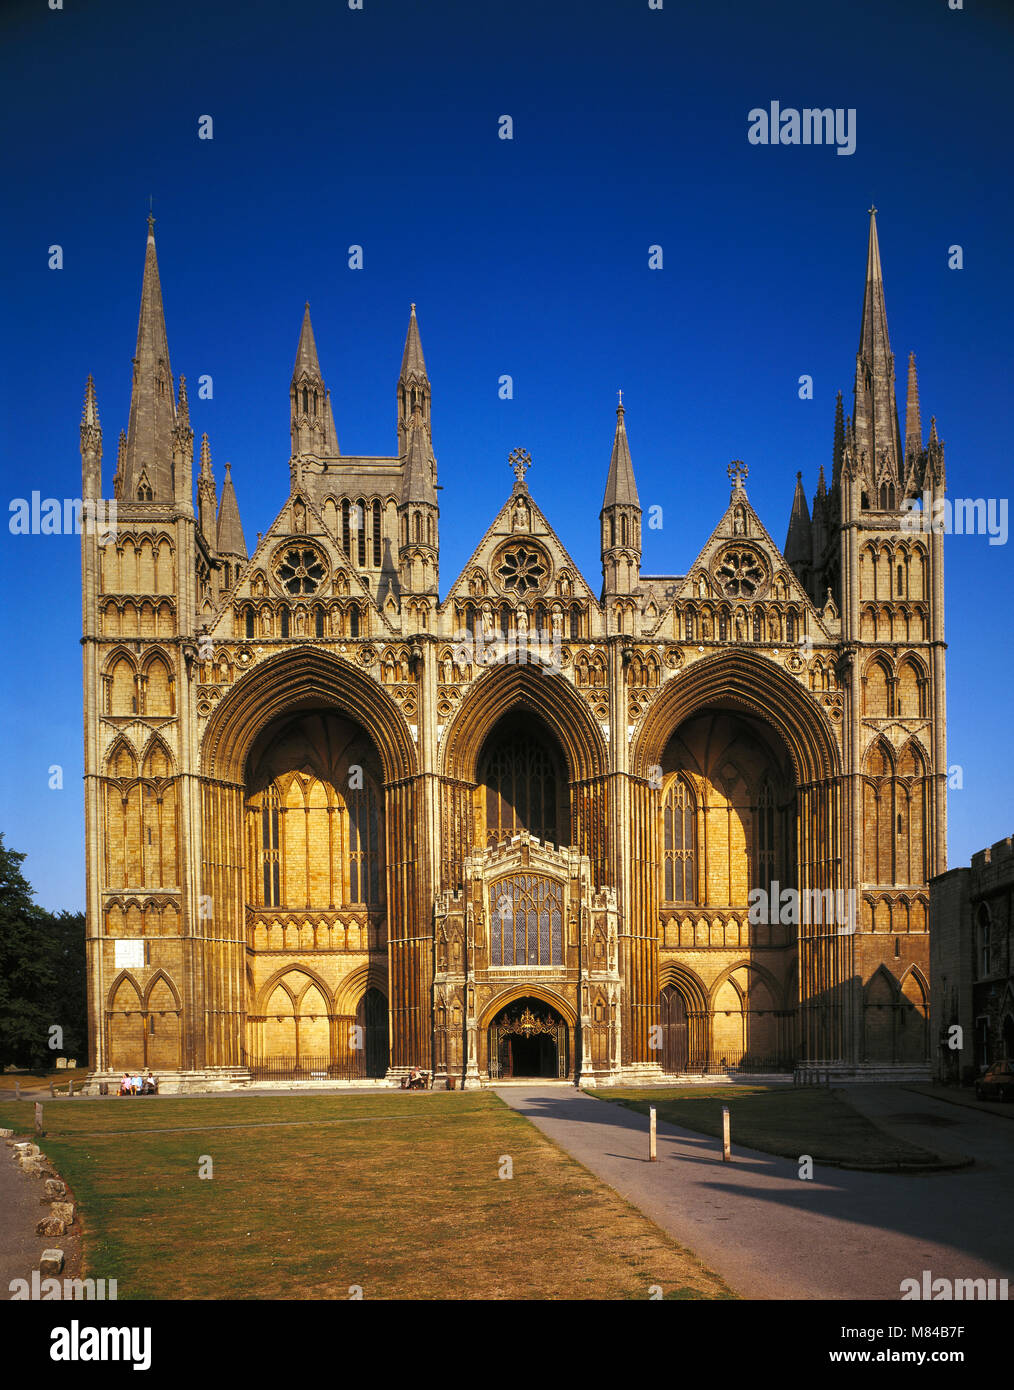 Peterborough Cathedral, Cambridgeshire, England, UK. Stock Photo